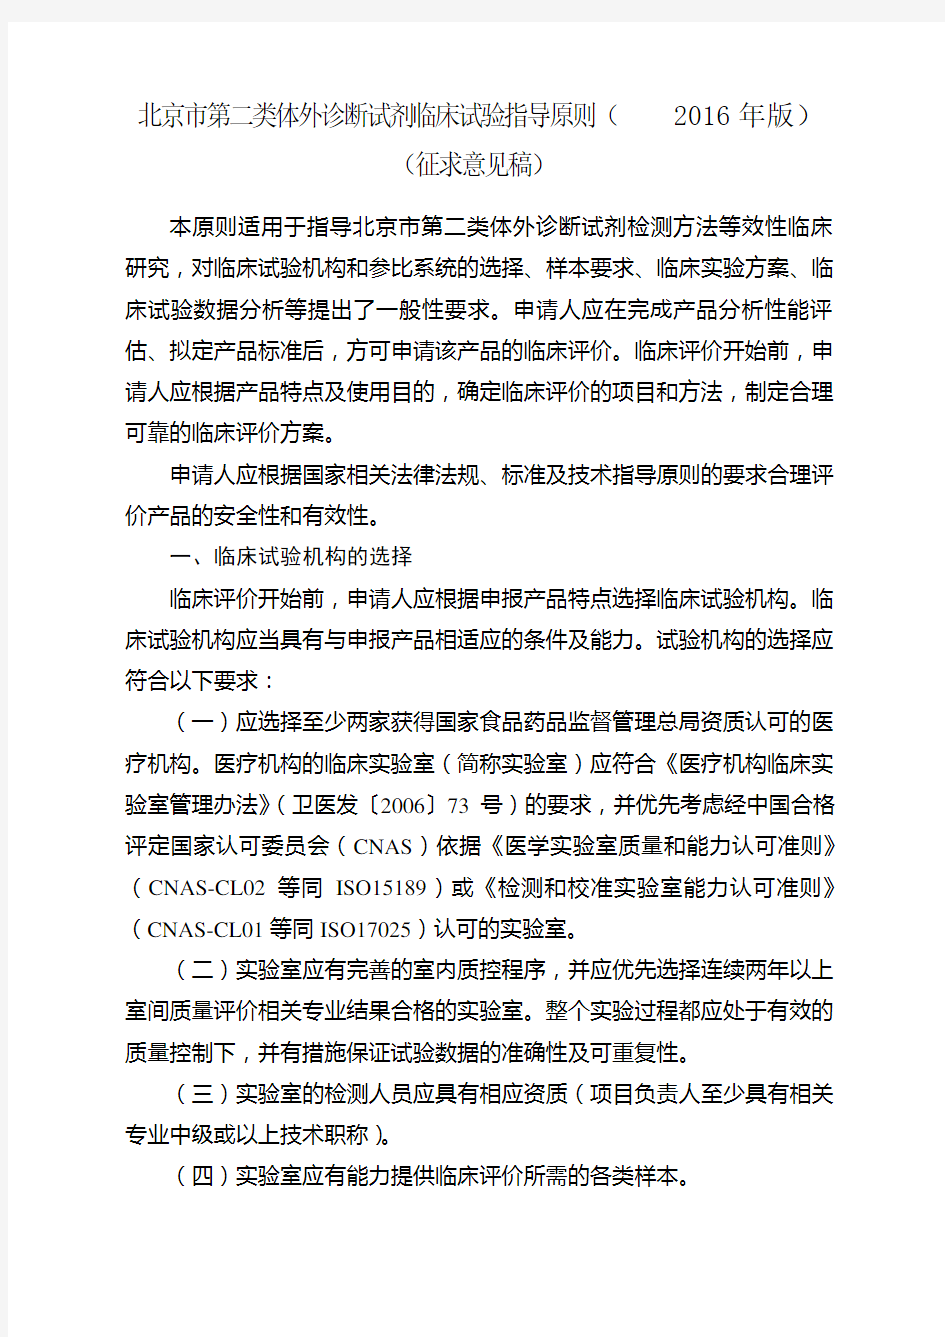 (完整版)北京市第二类体外诊断试剂临床试验指导原则(2016年版)